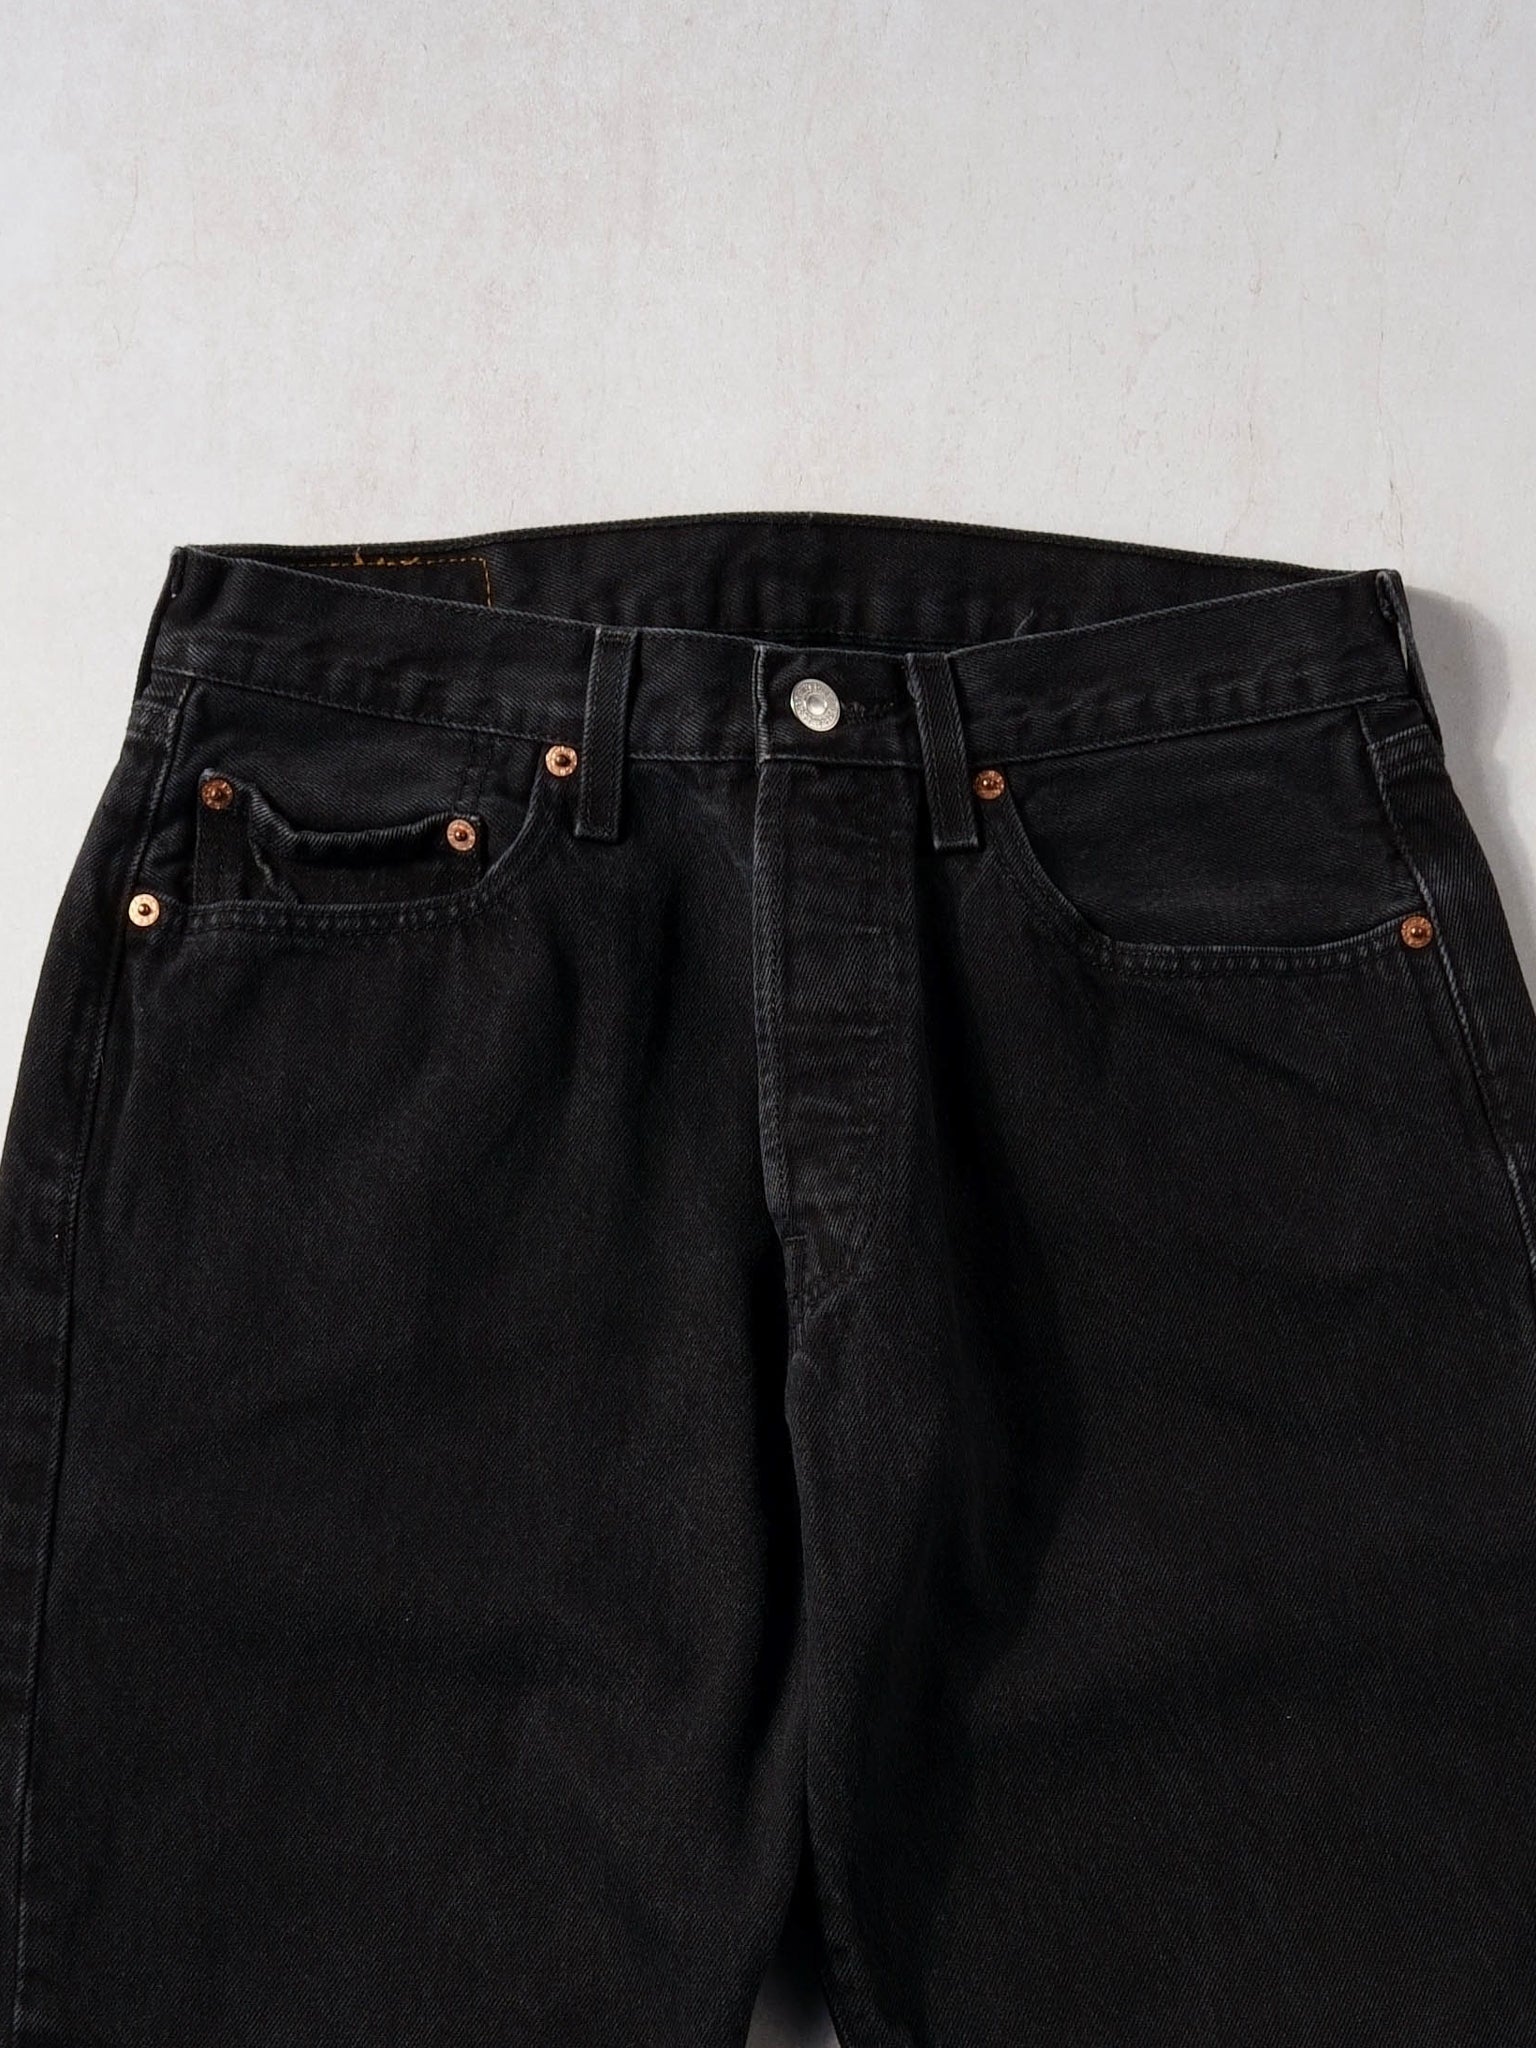 Vintage 90s Black Levi's 501 Denim Jeans (30x29)